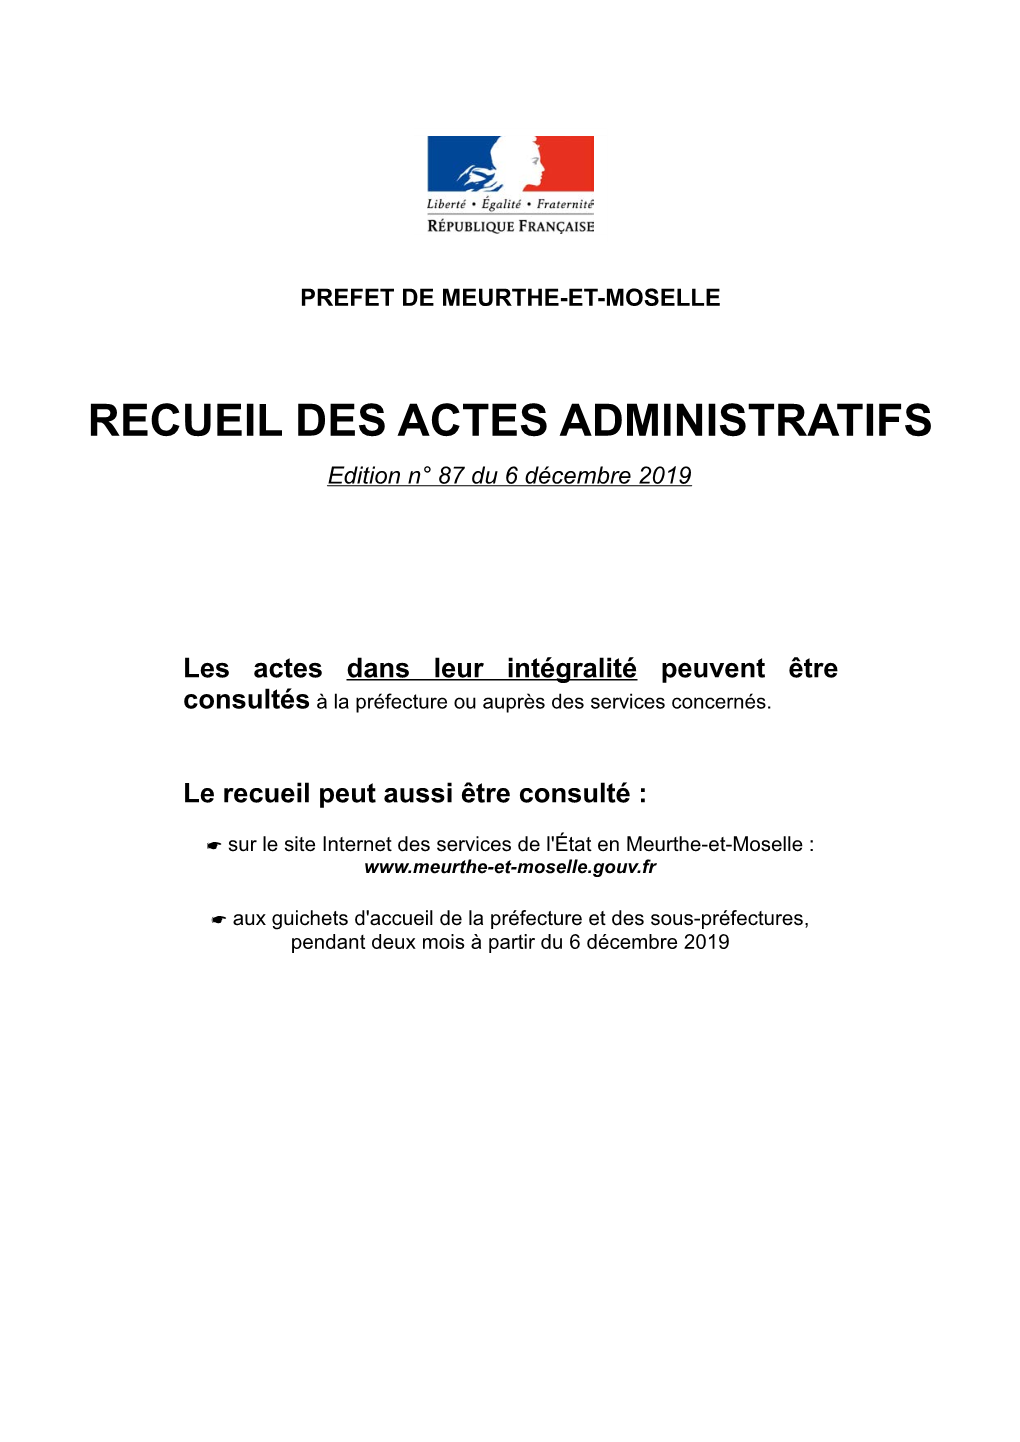 RECUEIL DES ACTES ADMINISTRATIFS Edition N° 87 Du 6 Décembre 2019